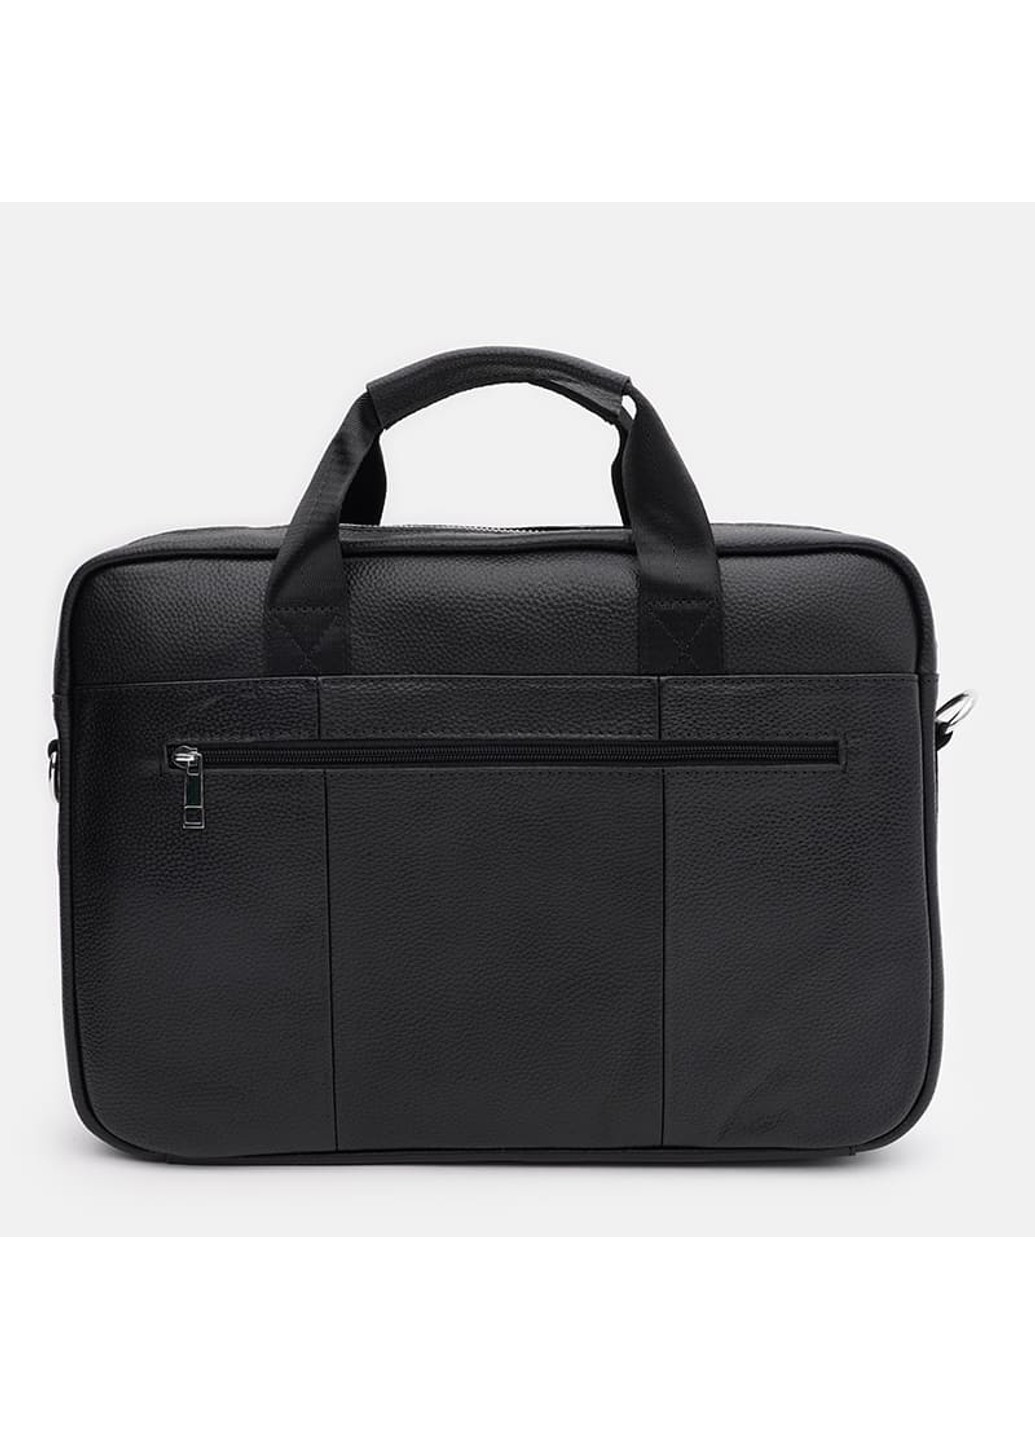 Мужская кожаная сумка - портфель K17067bl-black Keizer (274535898)